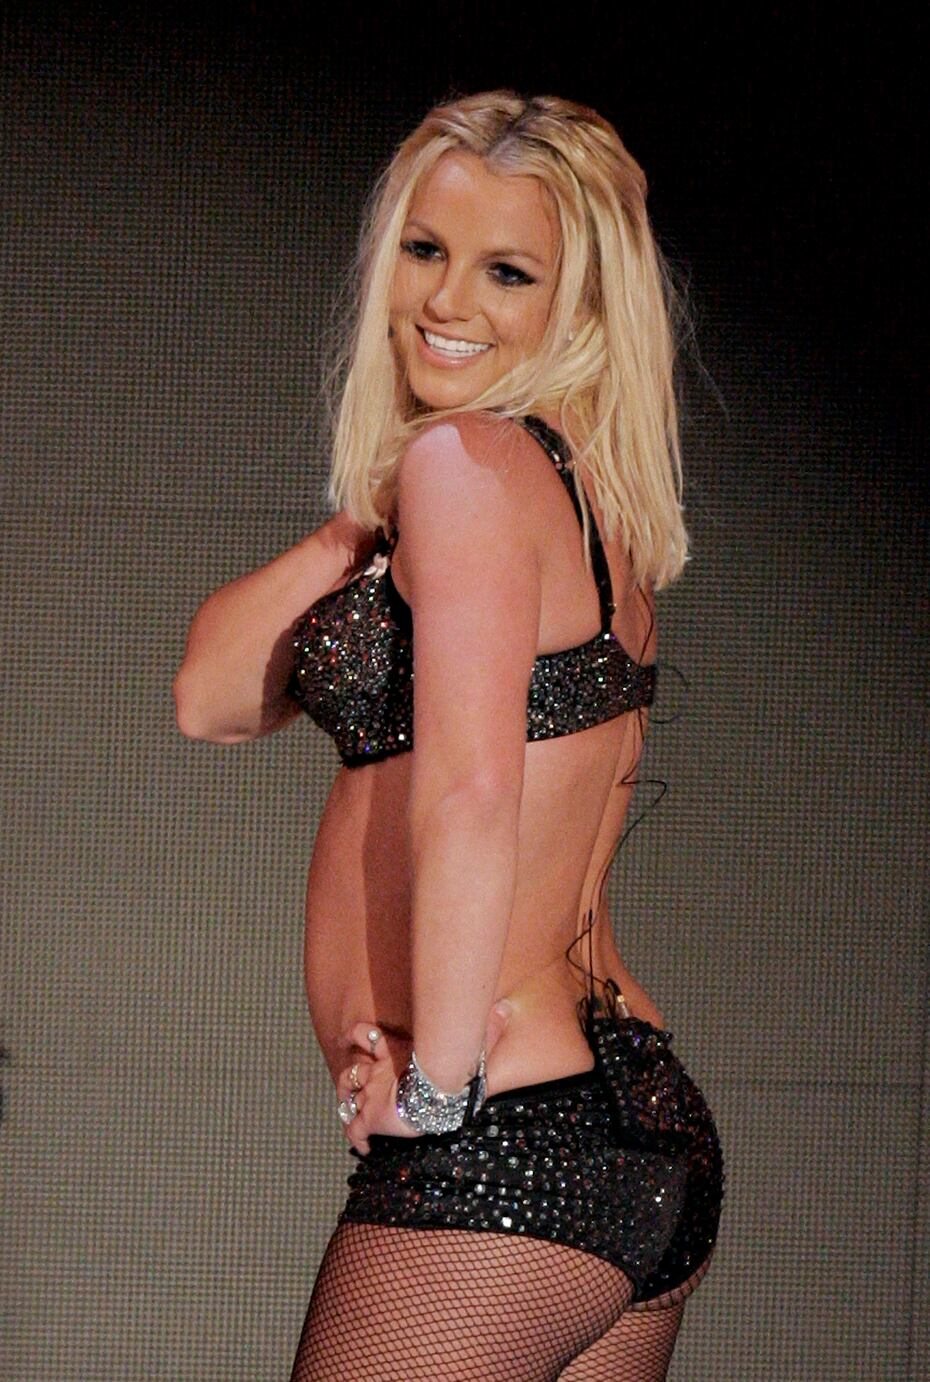 La cantante siguió trabajando, y en 2007 lanzó el álbum "Blackout", pero llegó su desastrosa presentación del tema "Gimme More" en los MTV Video Music Awards de 2007. Britney lució perdida, errática con una imagen muy distante a la que solía proyectar en sus presentaciones.